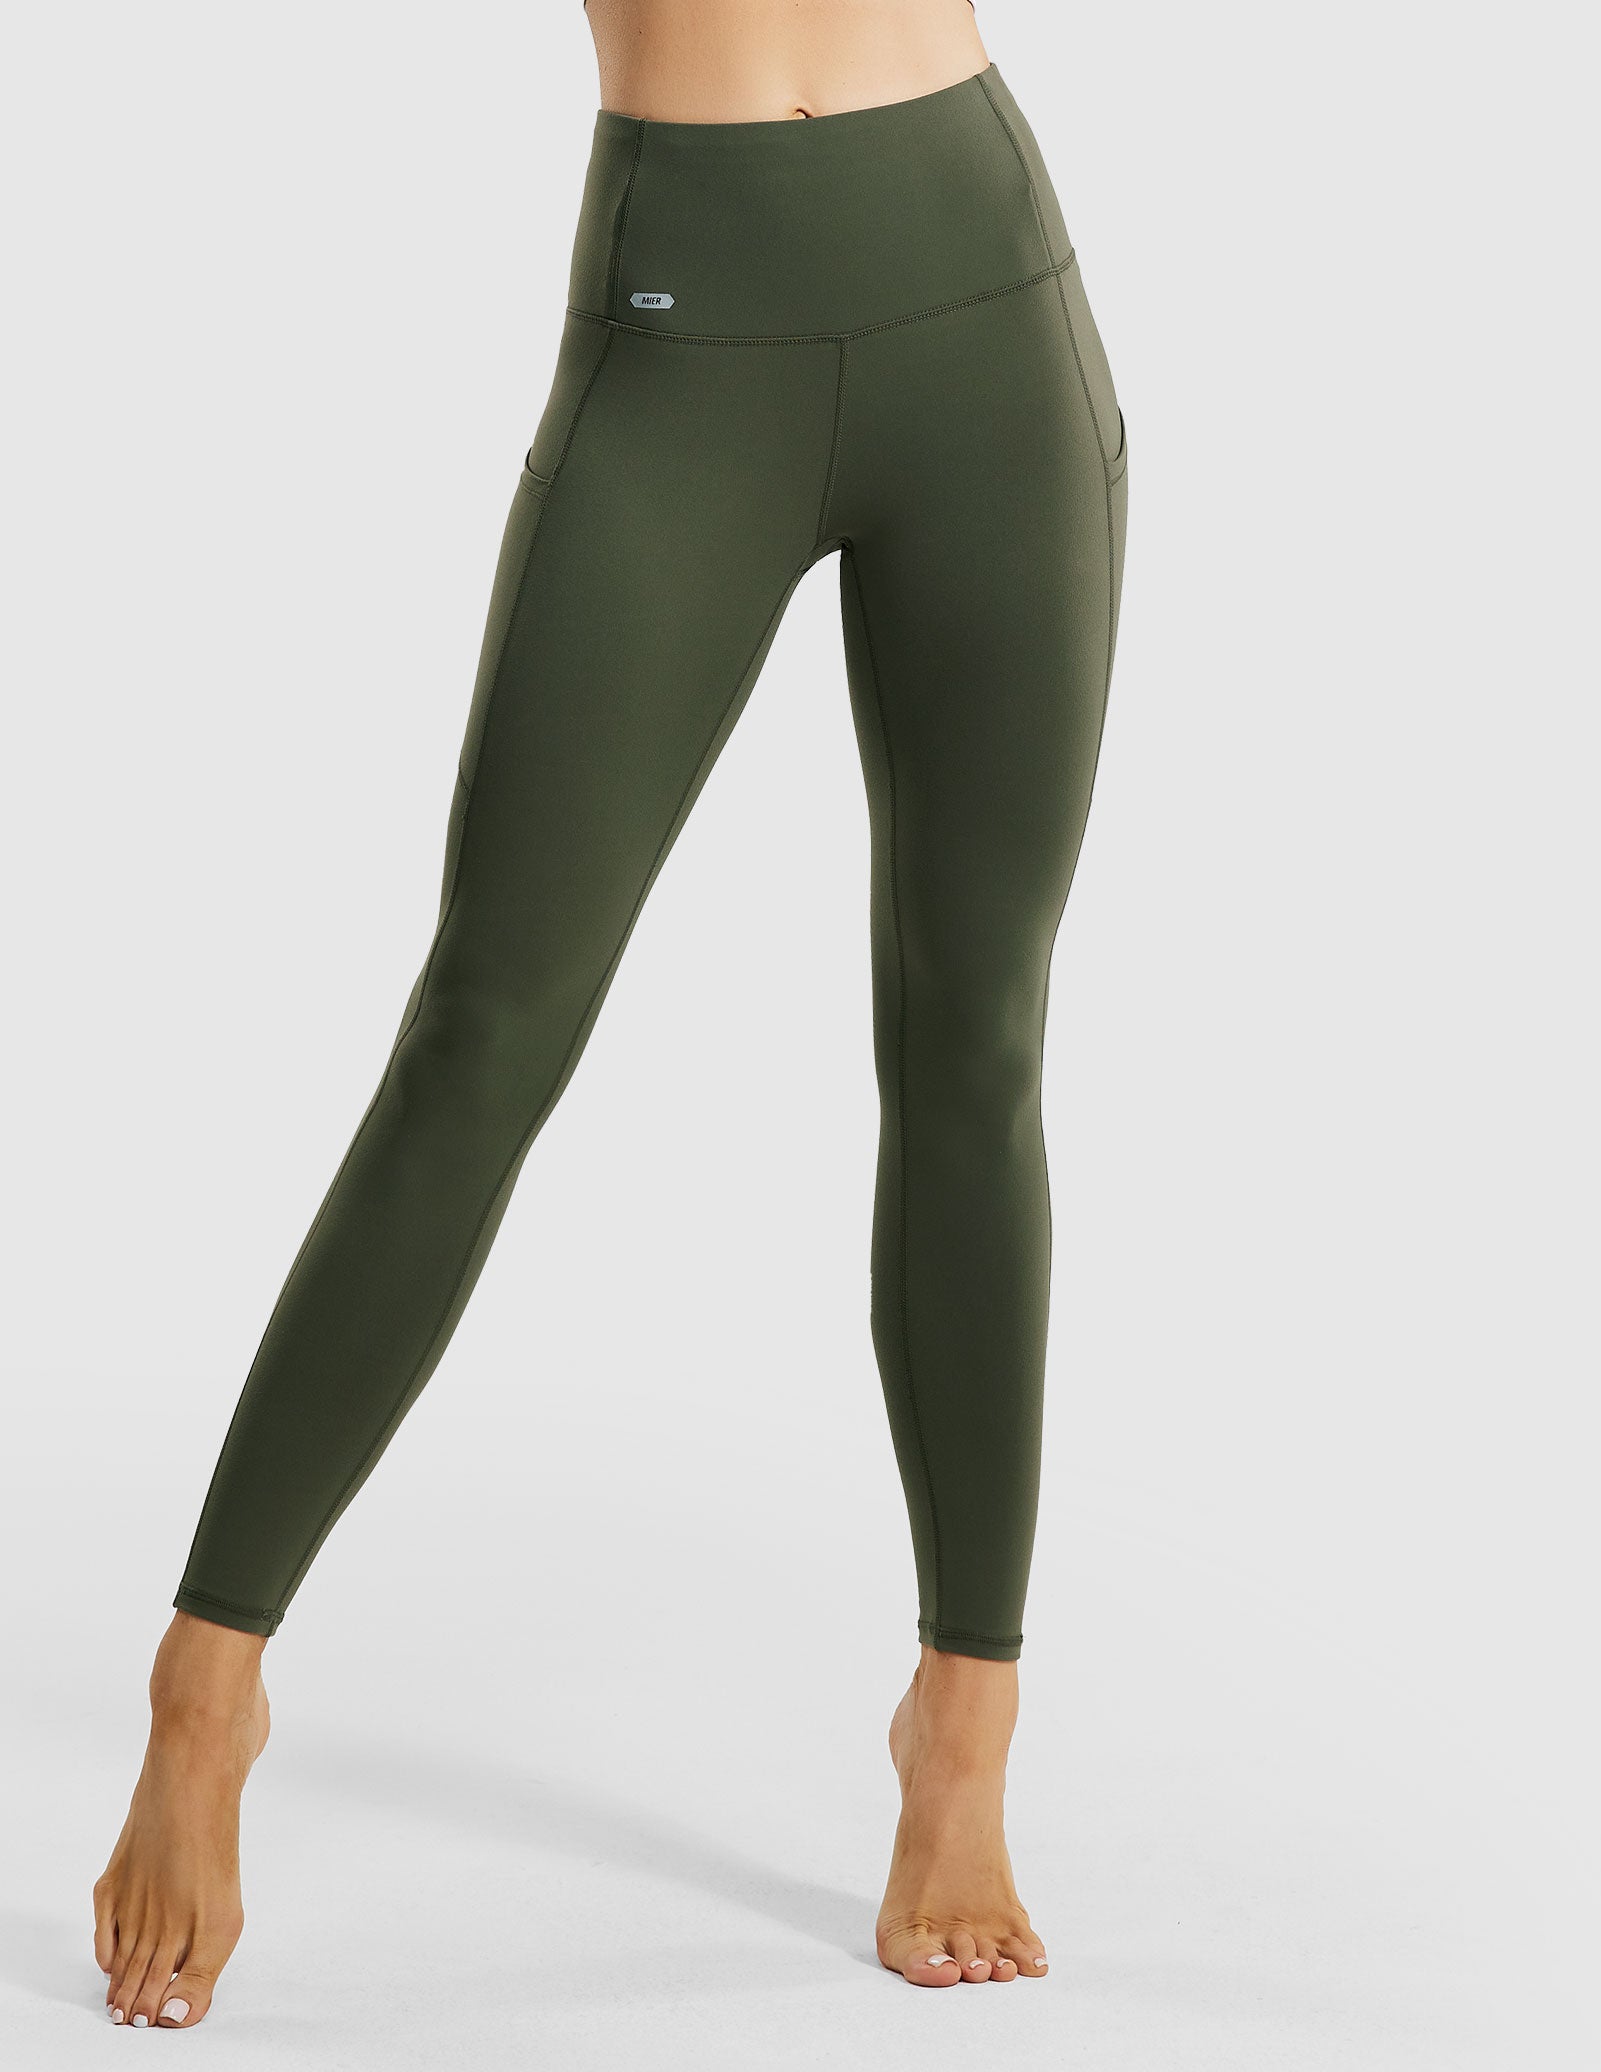 CRZ YOGA Olive Green Cropped Leggings (Med)  Cropped leggings, Comfortable  leggings, Leggings